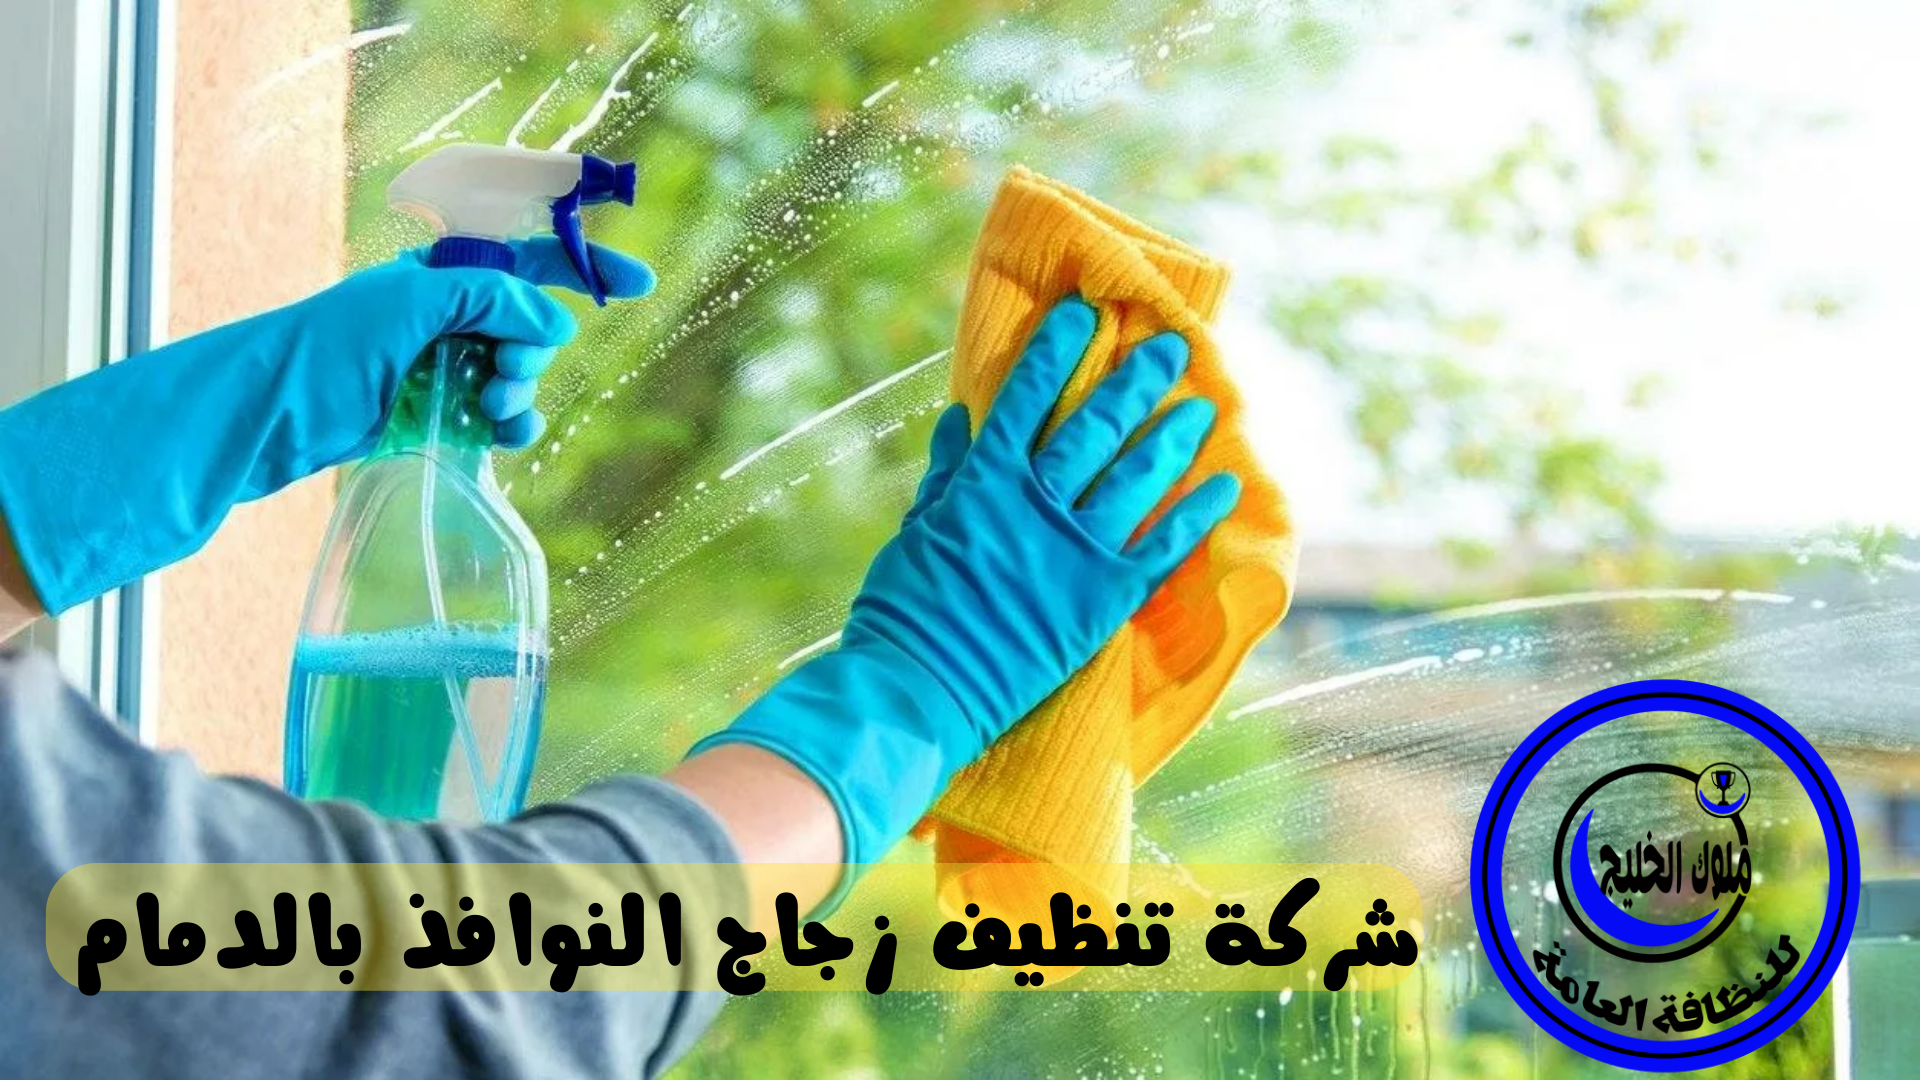 شركة تنظيف واجهات زجاجية بالدمام 0500686439 خصم 35% لكل العملاء الجدد شركة ملوك الخليج